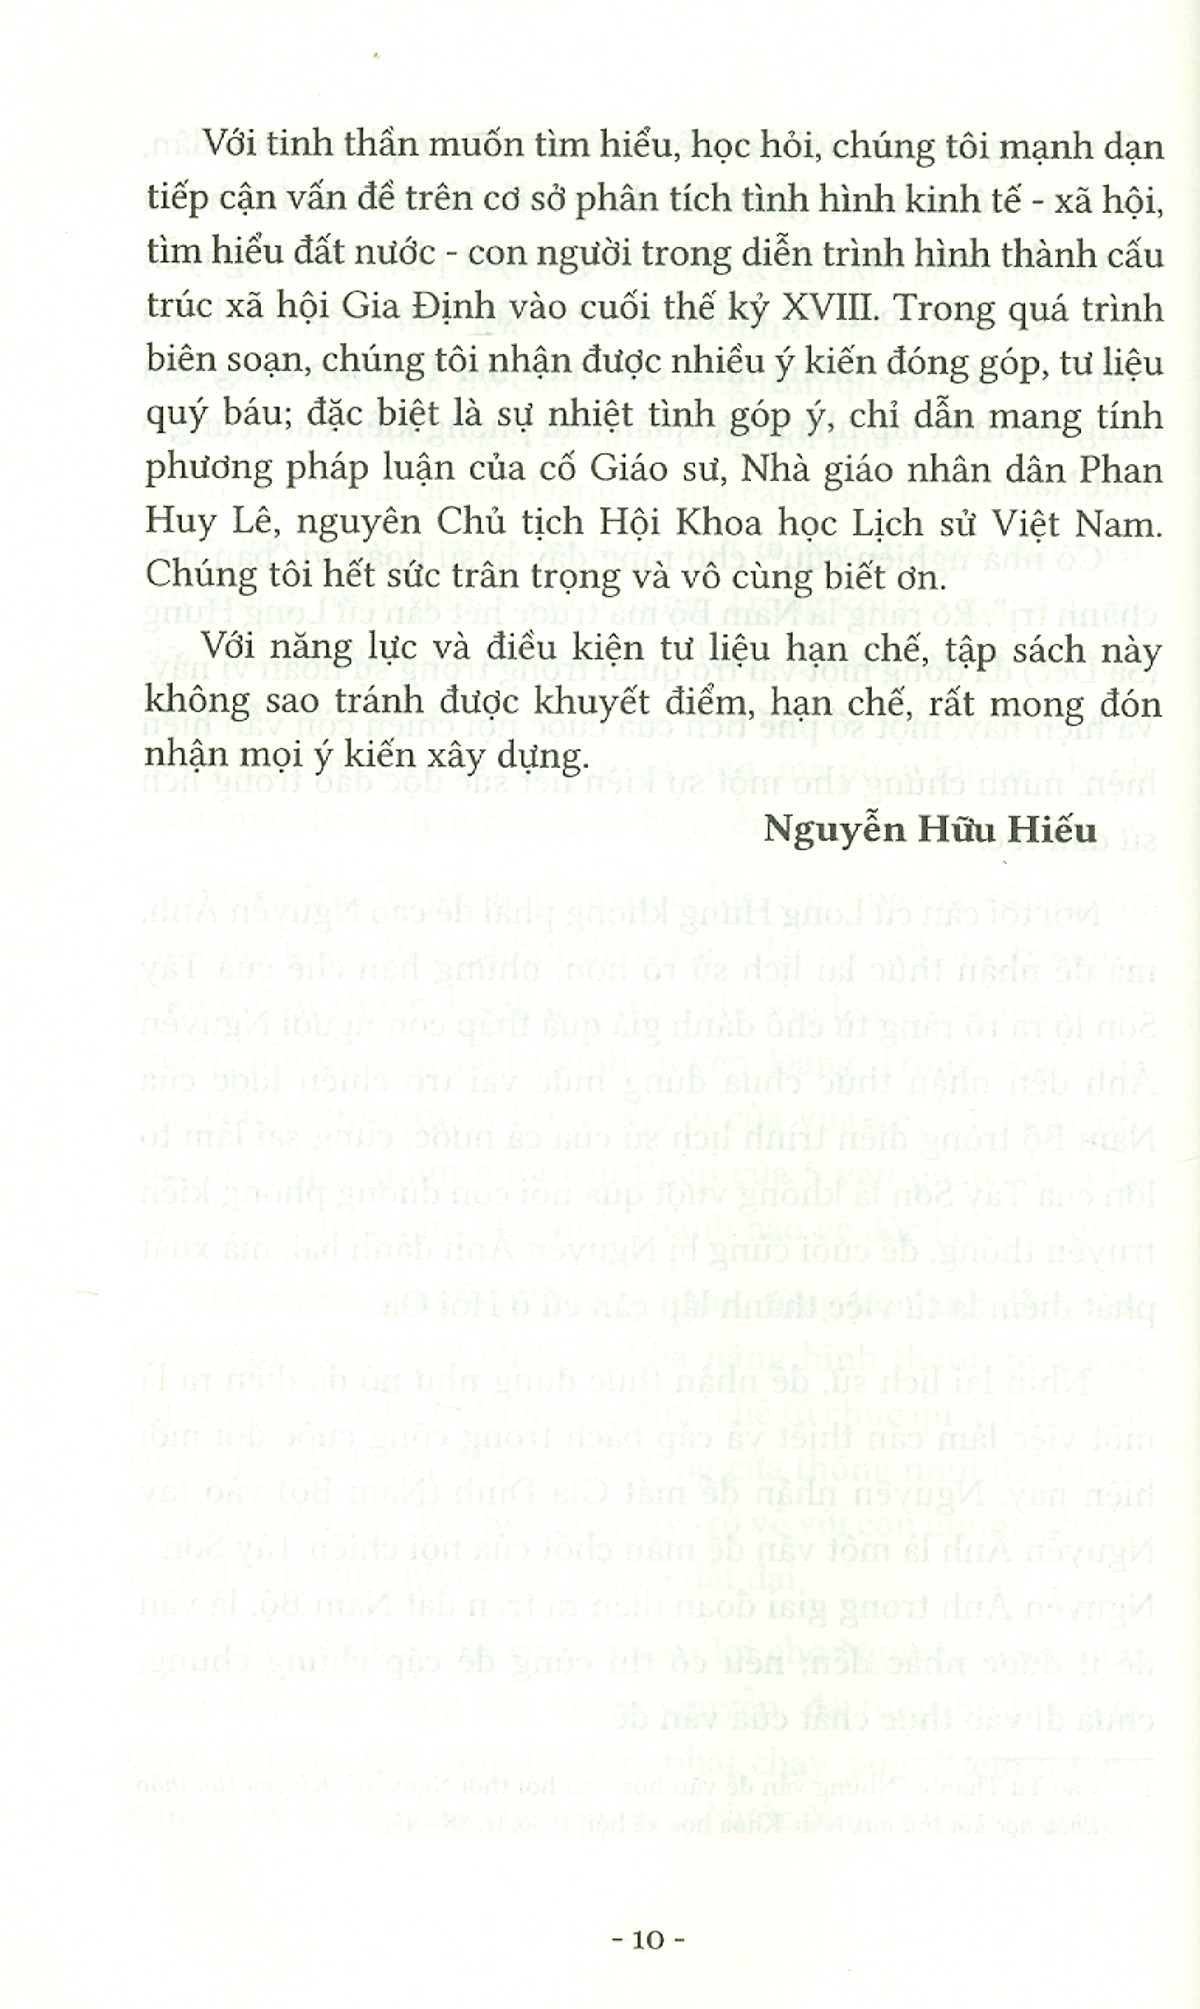 Nhìn Lại Xứ Gia Định Và Cuộc Nội Chiến Tây Sơn-Nguyễn Ánh 1777-1989 PDF